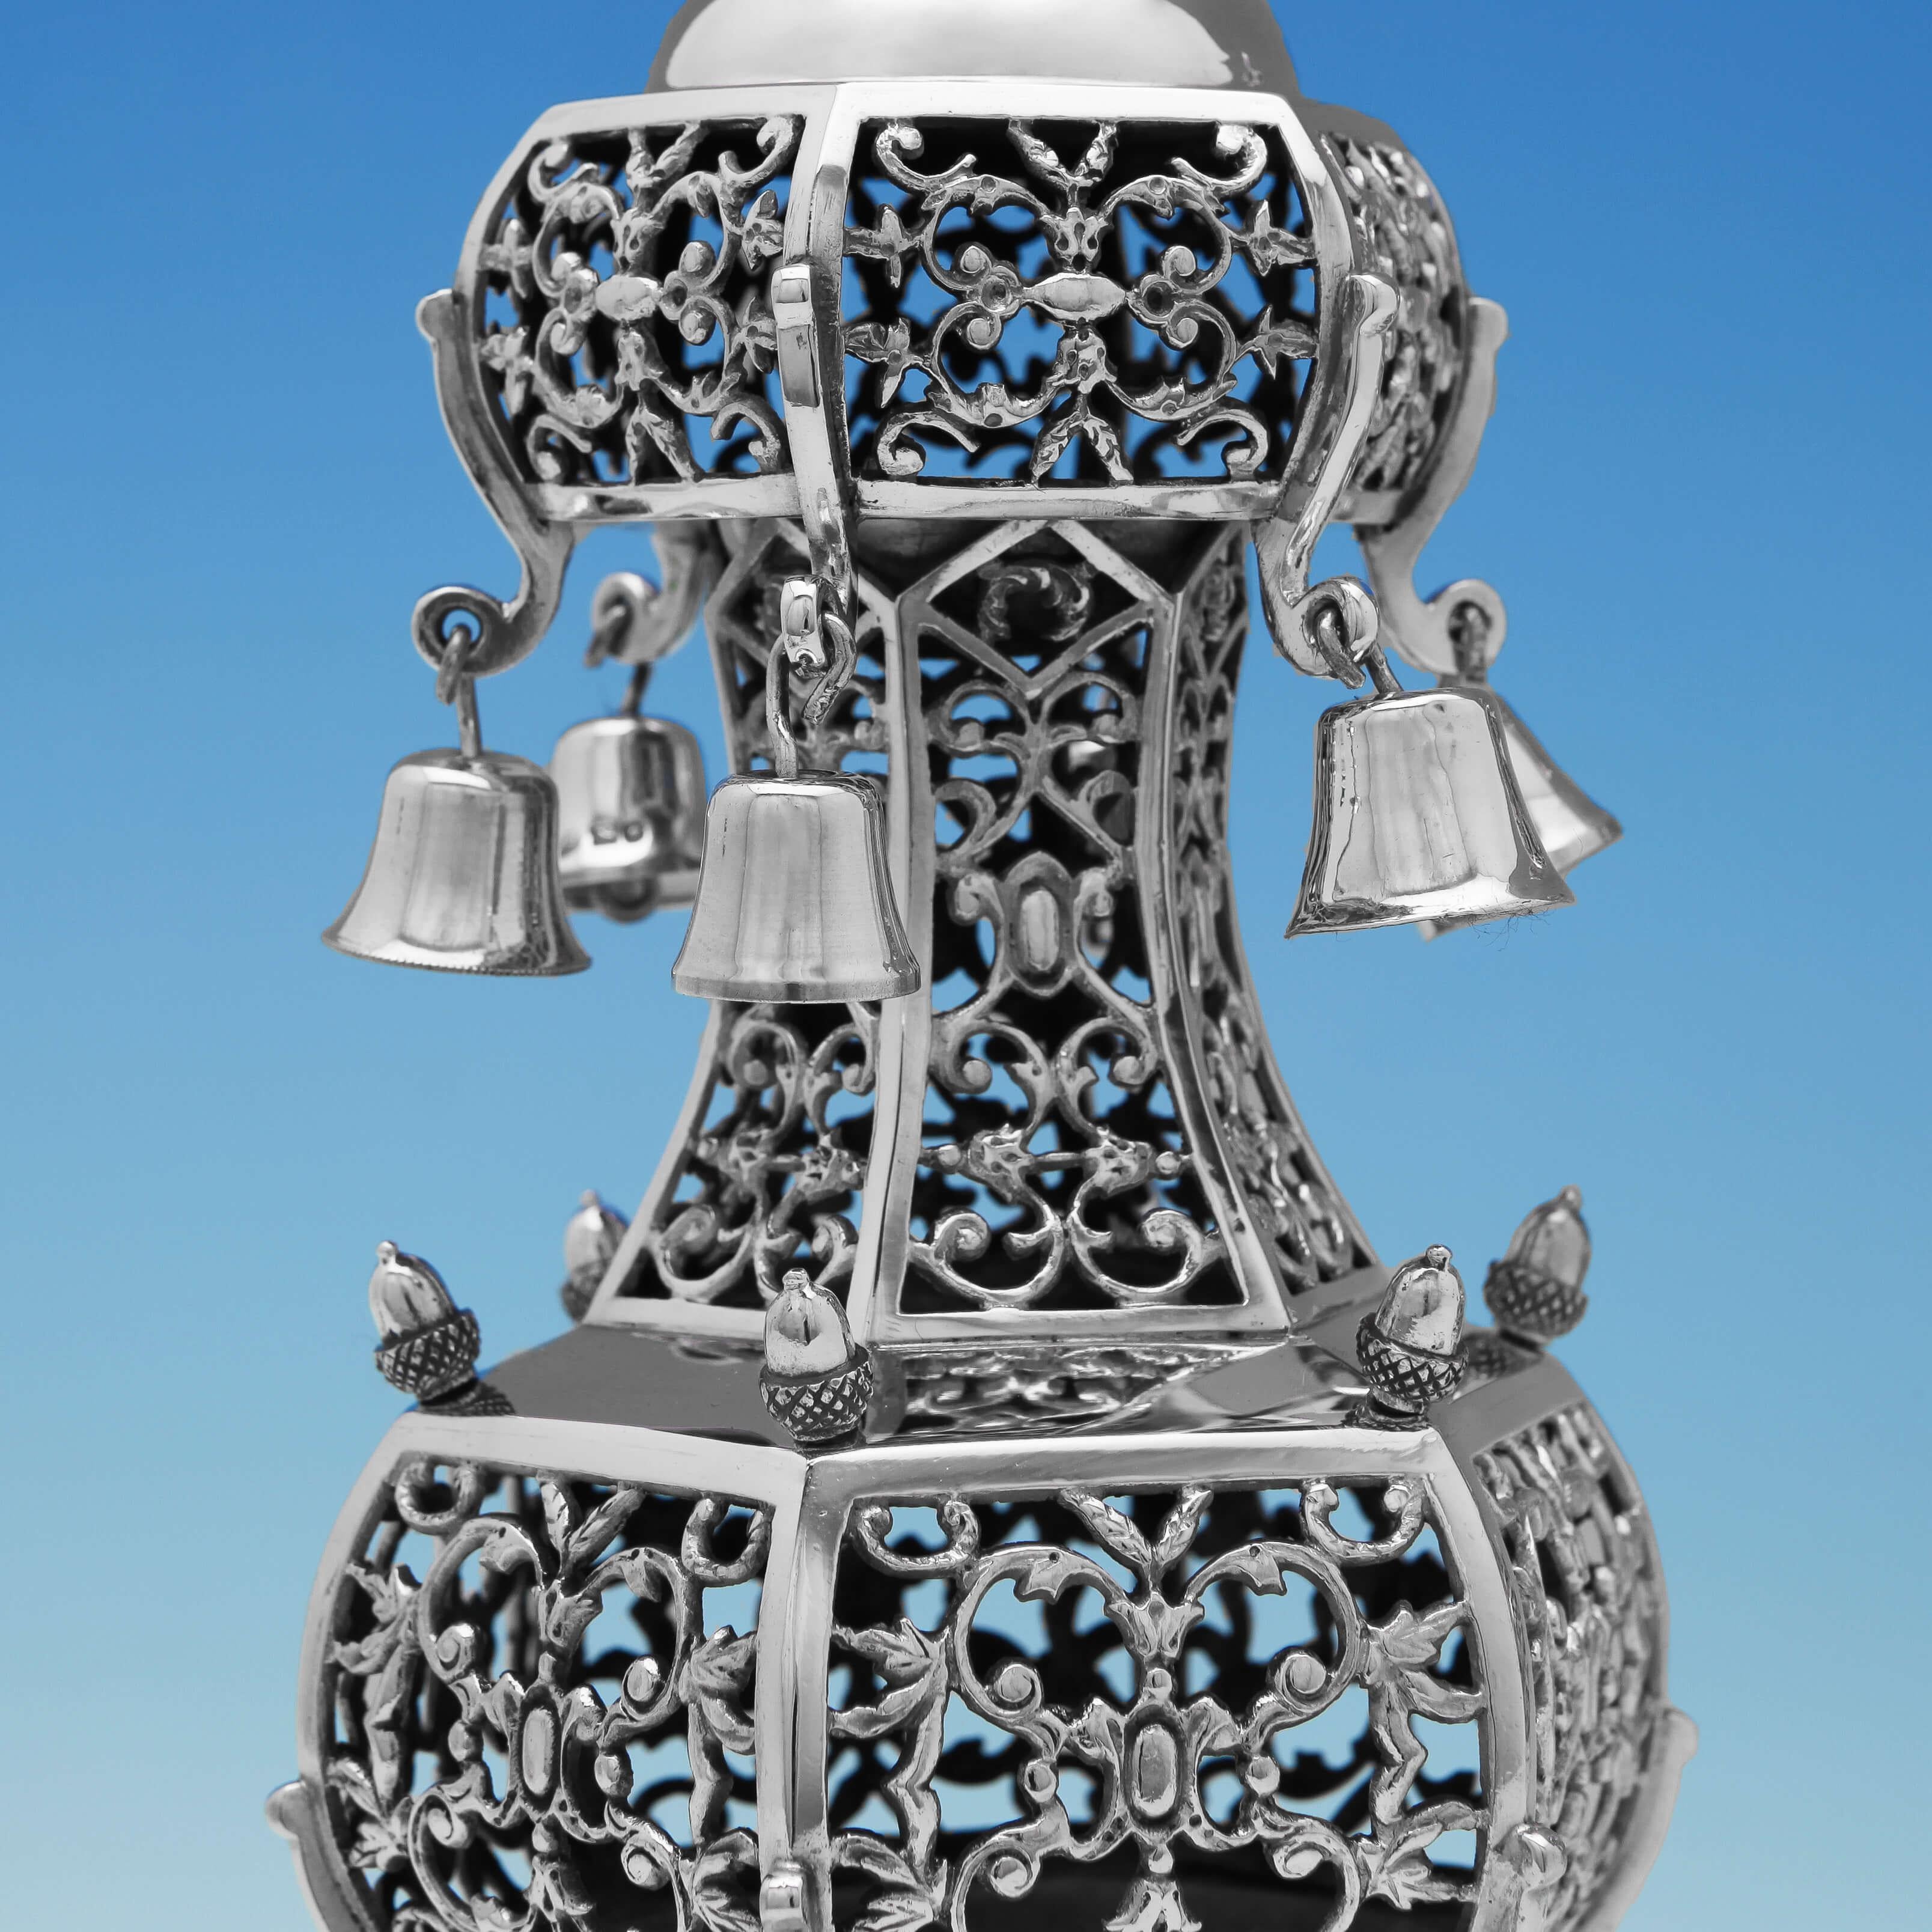 Poinçonnée à Londres en 1922 par Arthur Bowe sous le nom de Noble & Co, cette jolie paire de Rimonim en argent sterling de style George V est ornée d'un treillis sur tout le corps, de cloches et de glands attachés, et de terminaux en forme de